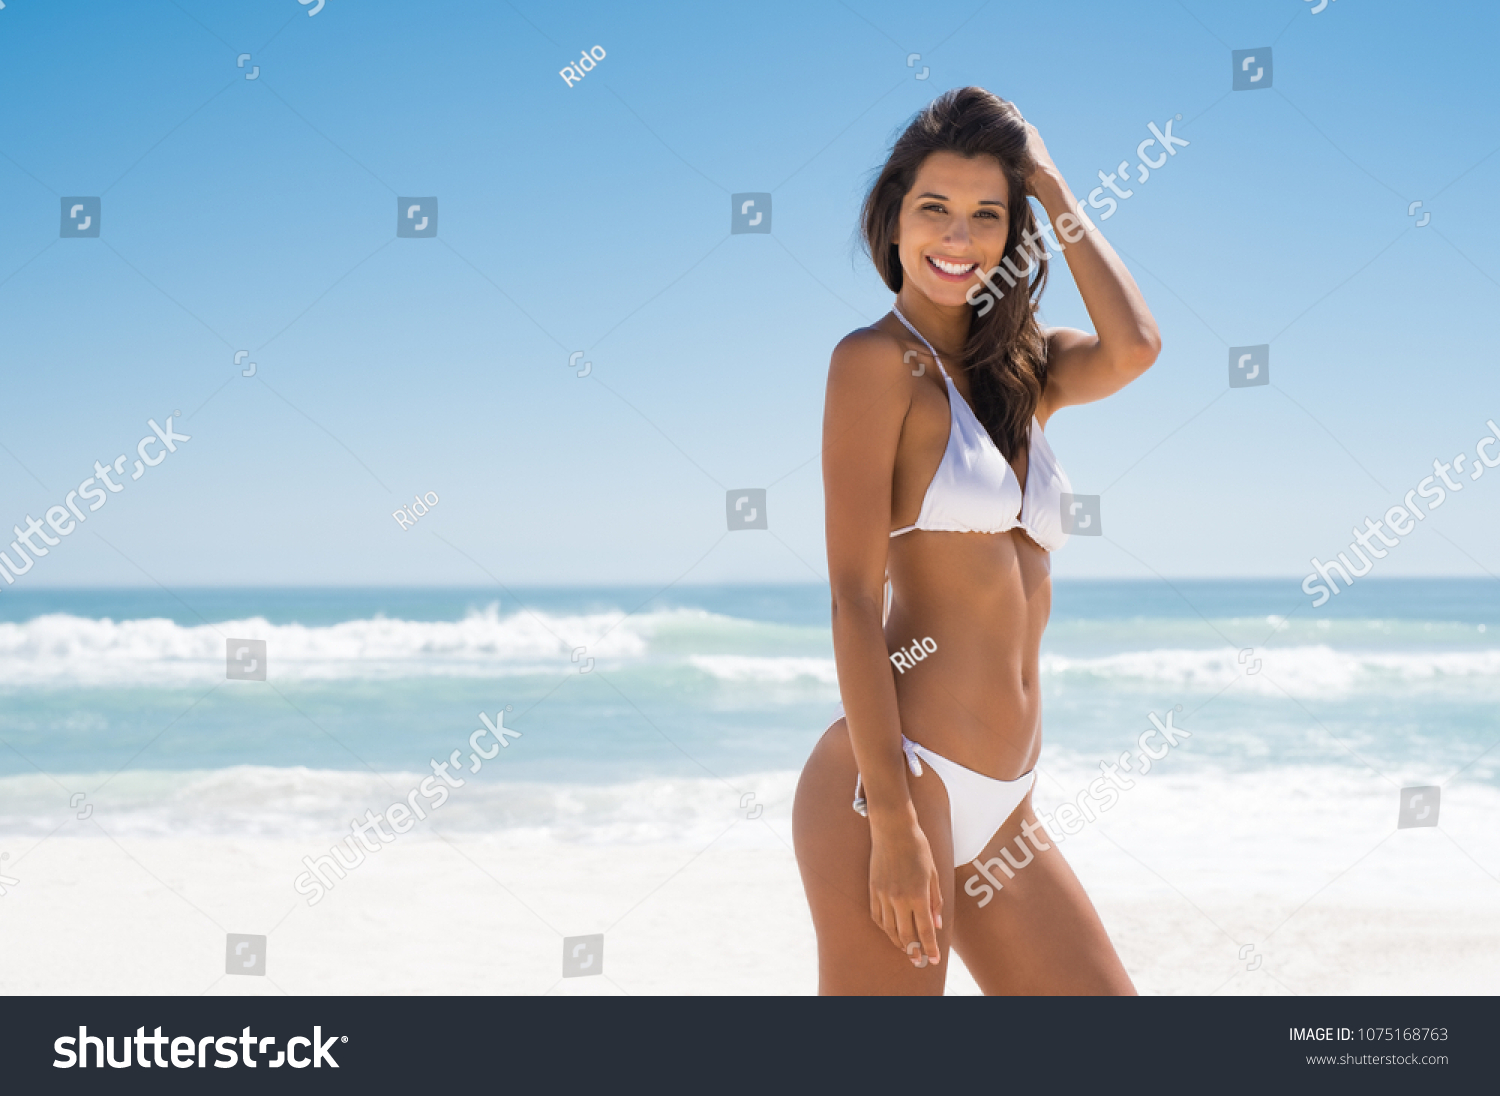 Bikini Girl In Latin